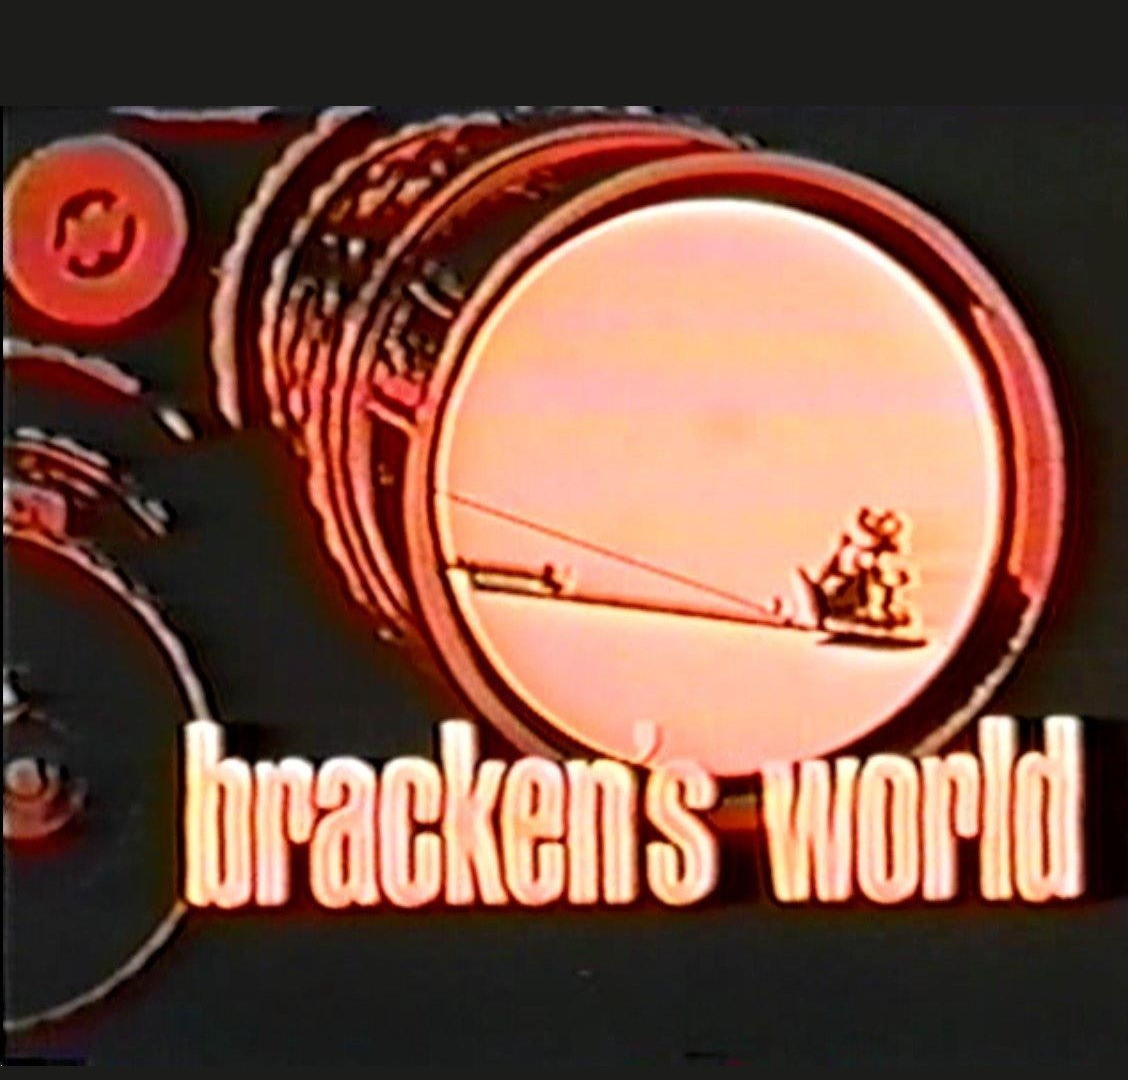 Show Bracken's World